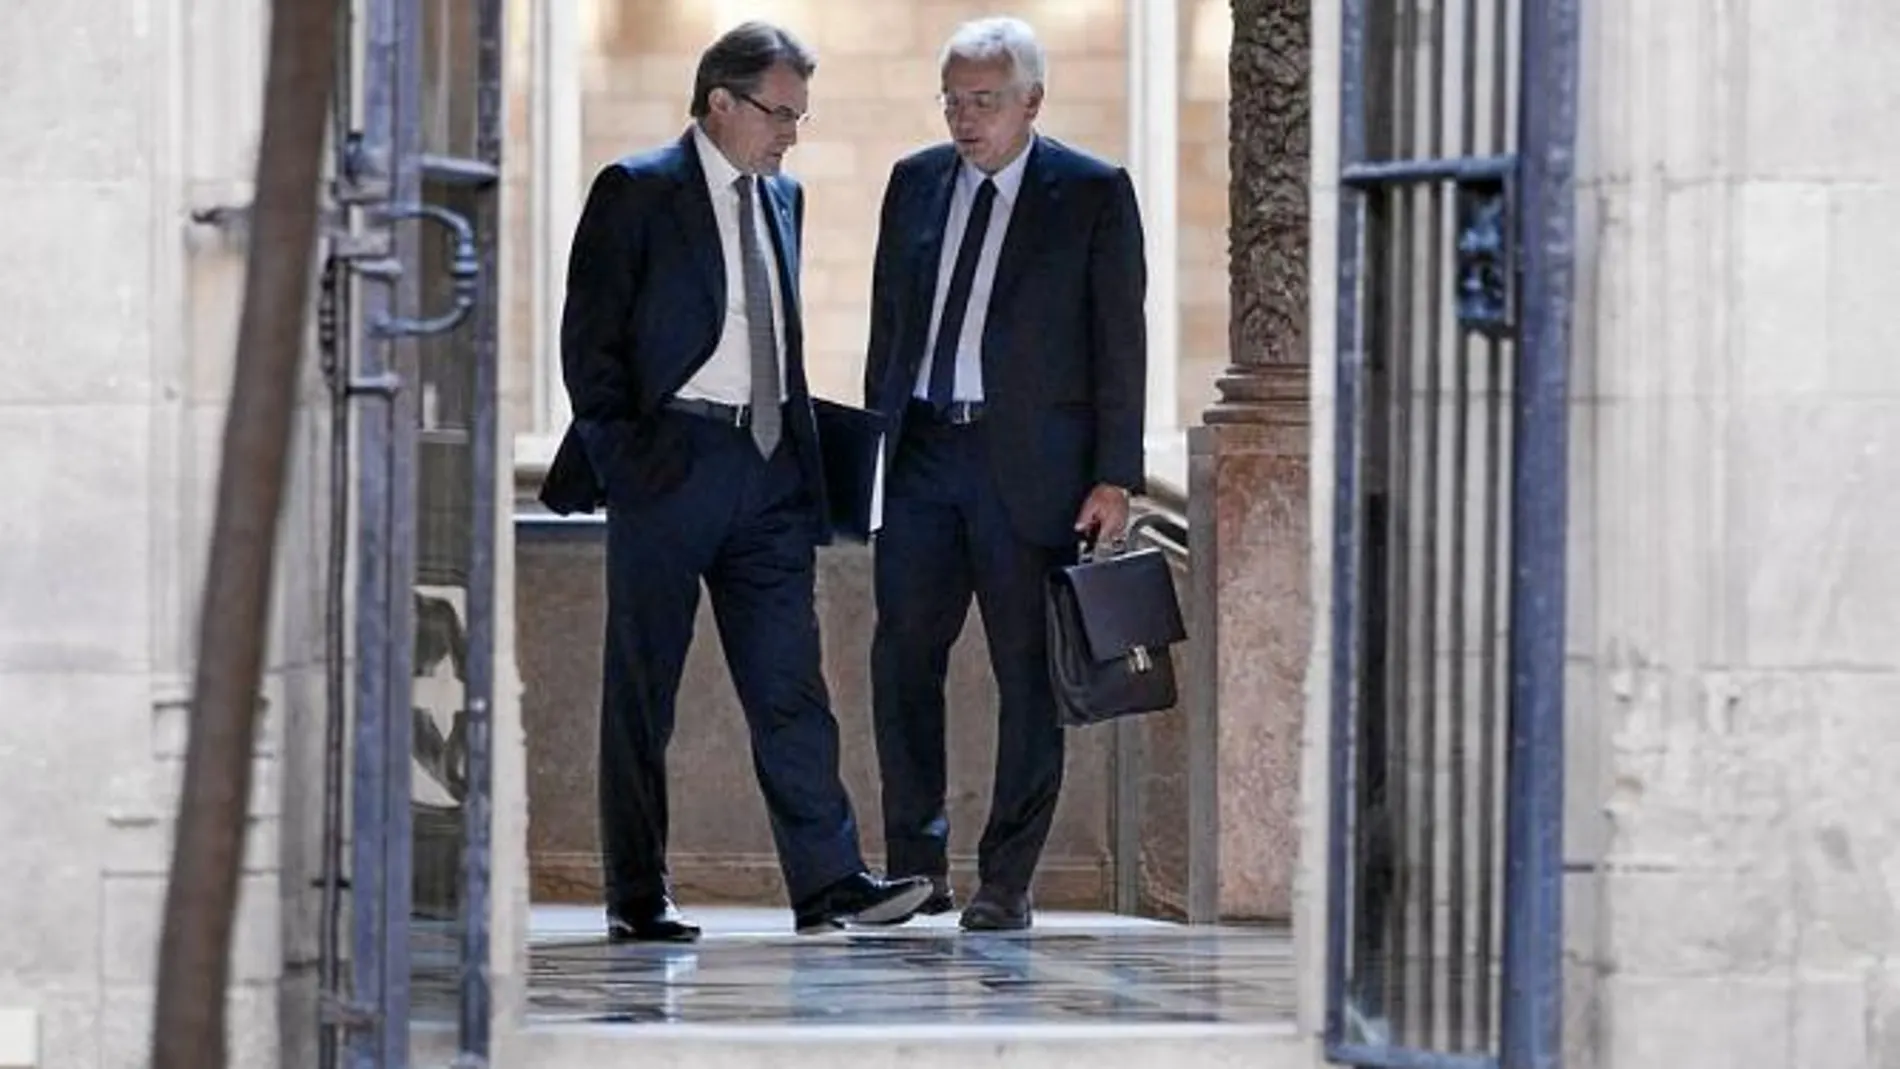 El consejero de Cultura, Ferran Mascarell, dialogando con el presidente de la Generalitat, Artur Mas